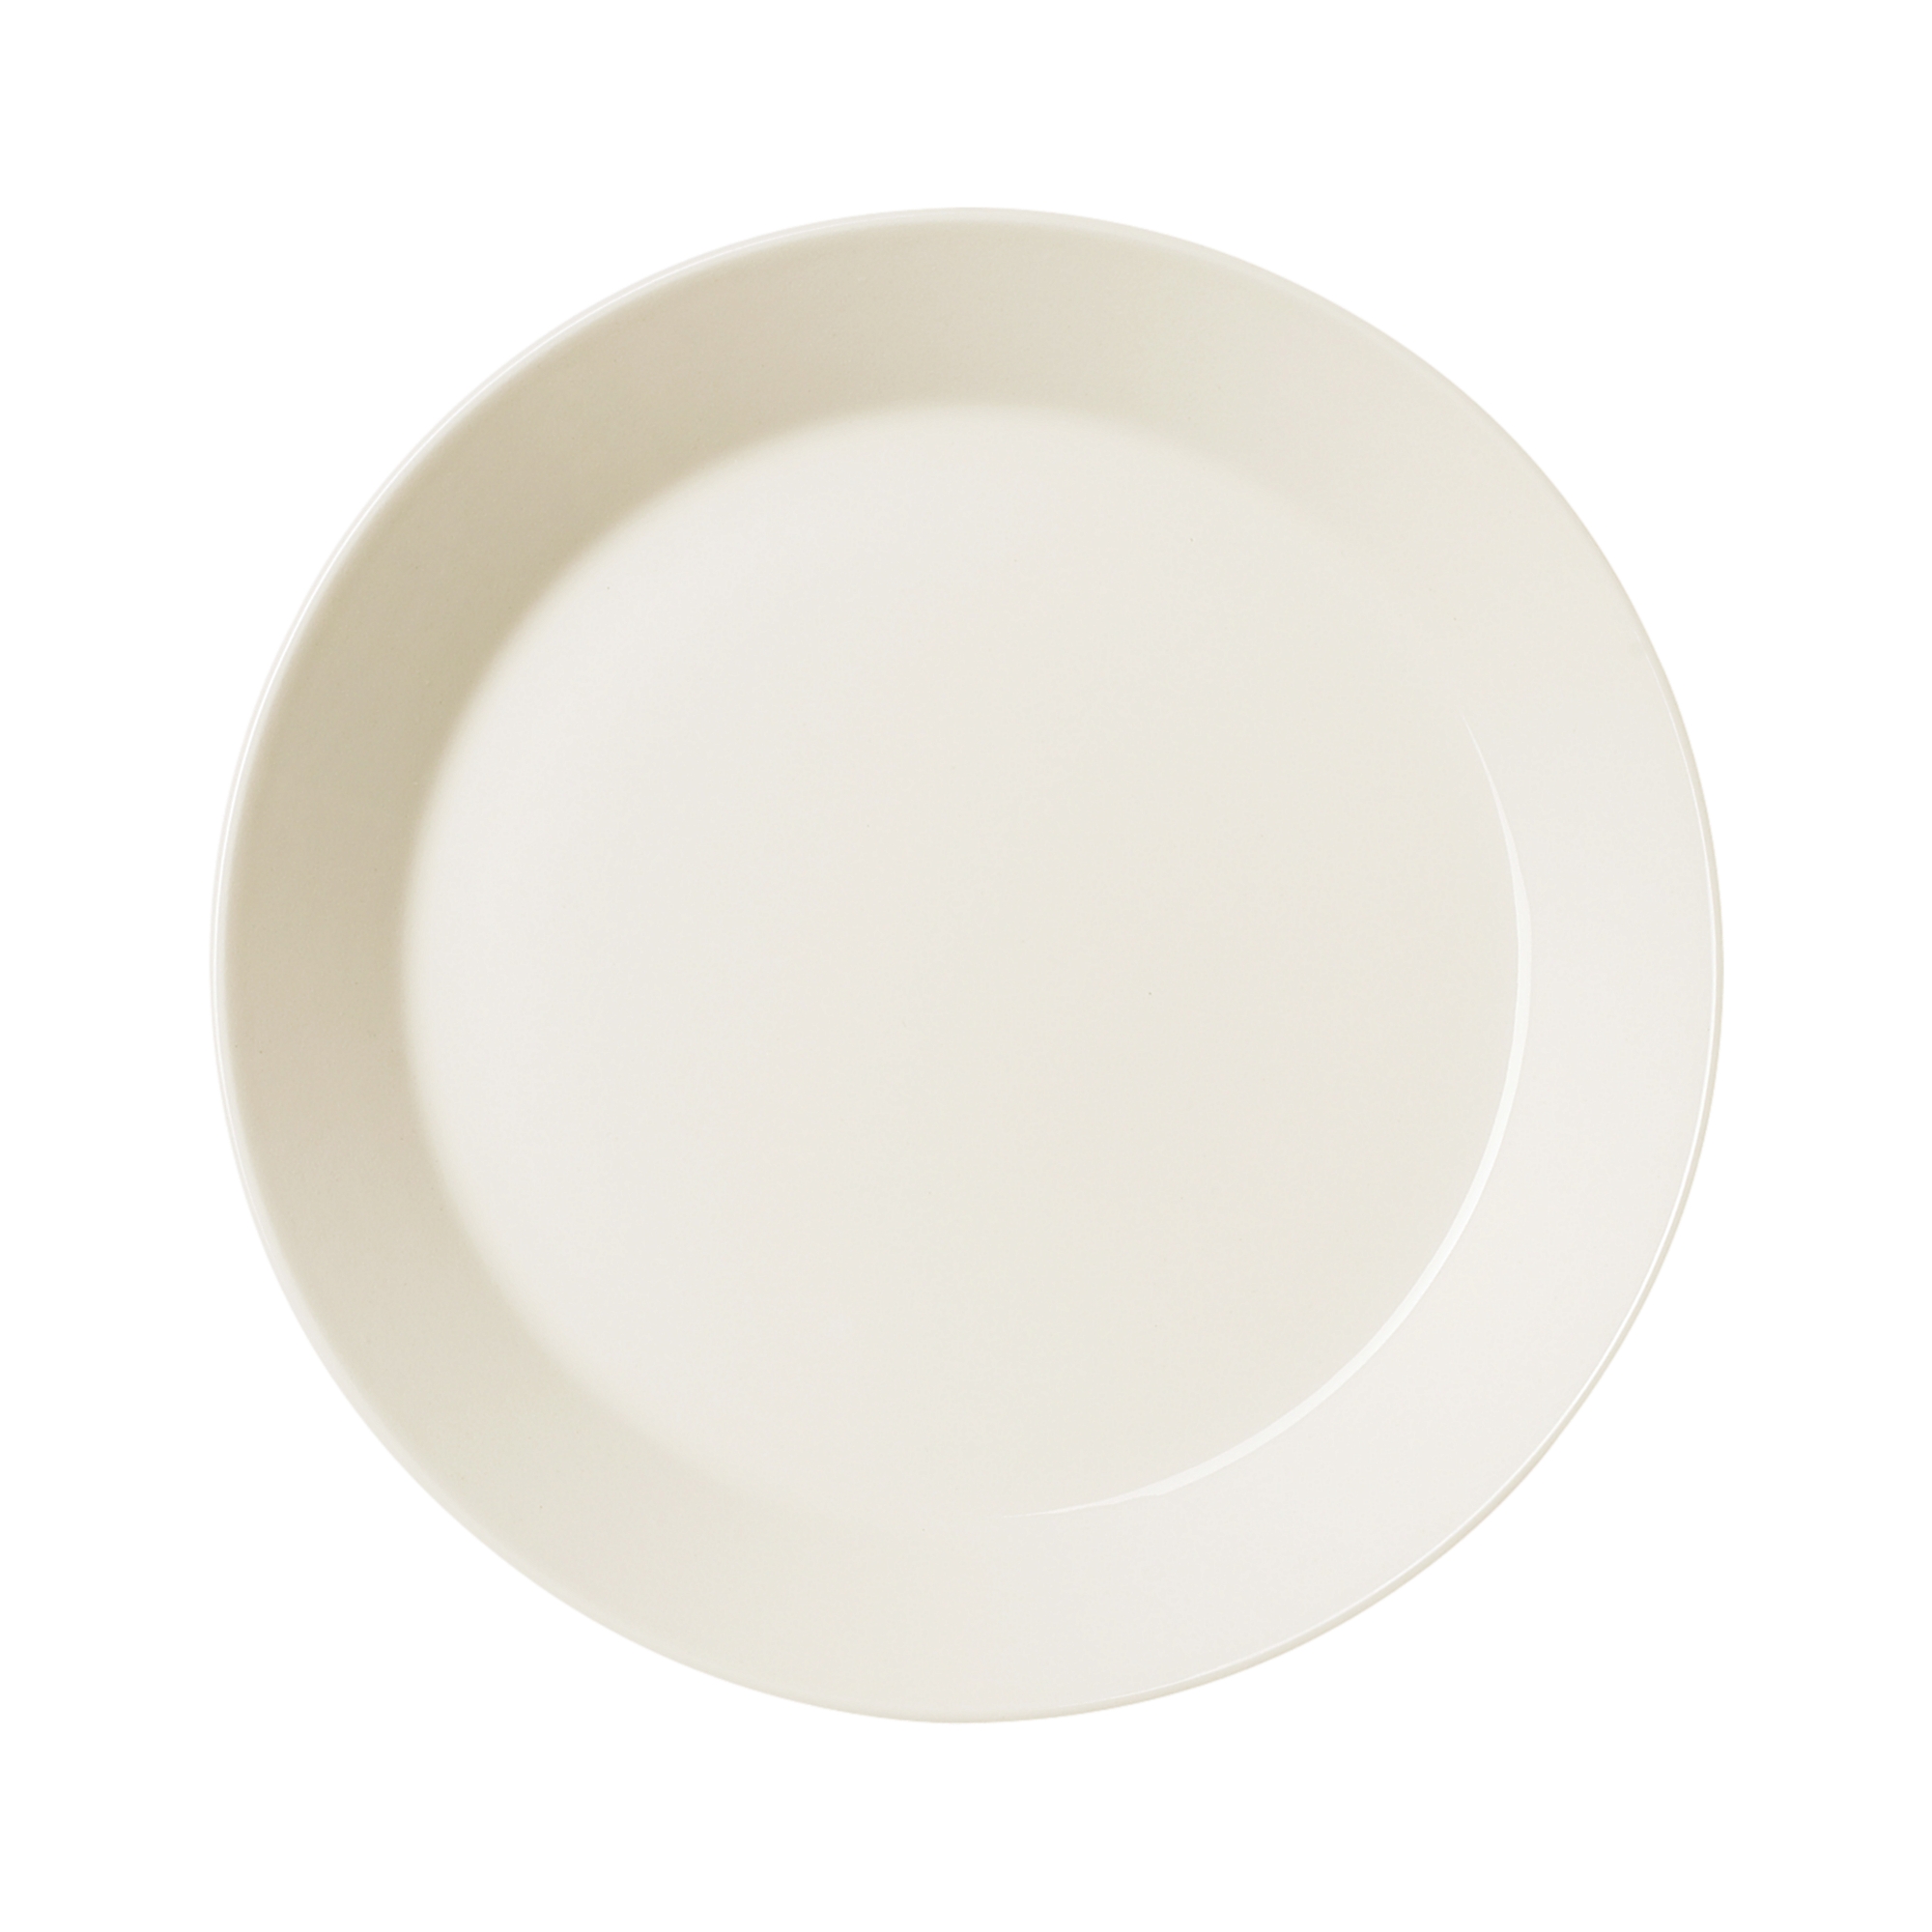 Teema 접시 21 cm 흰색